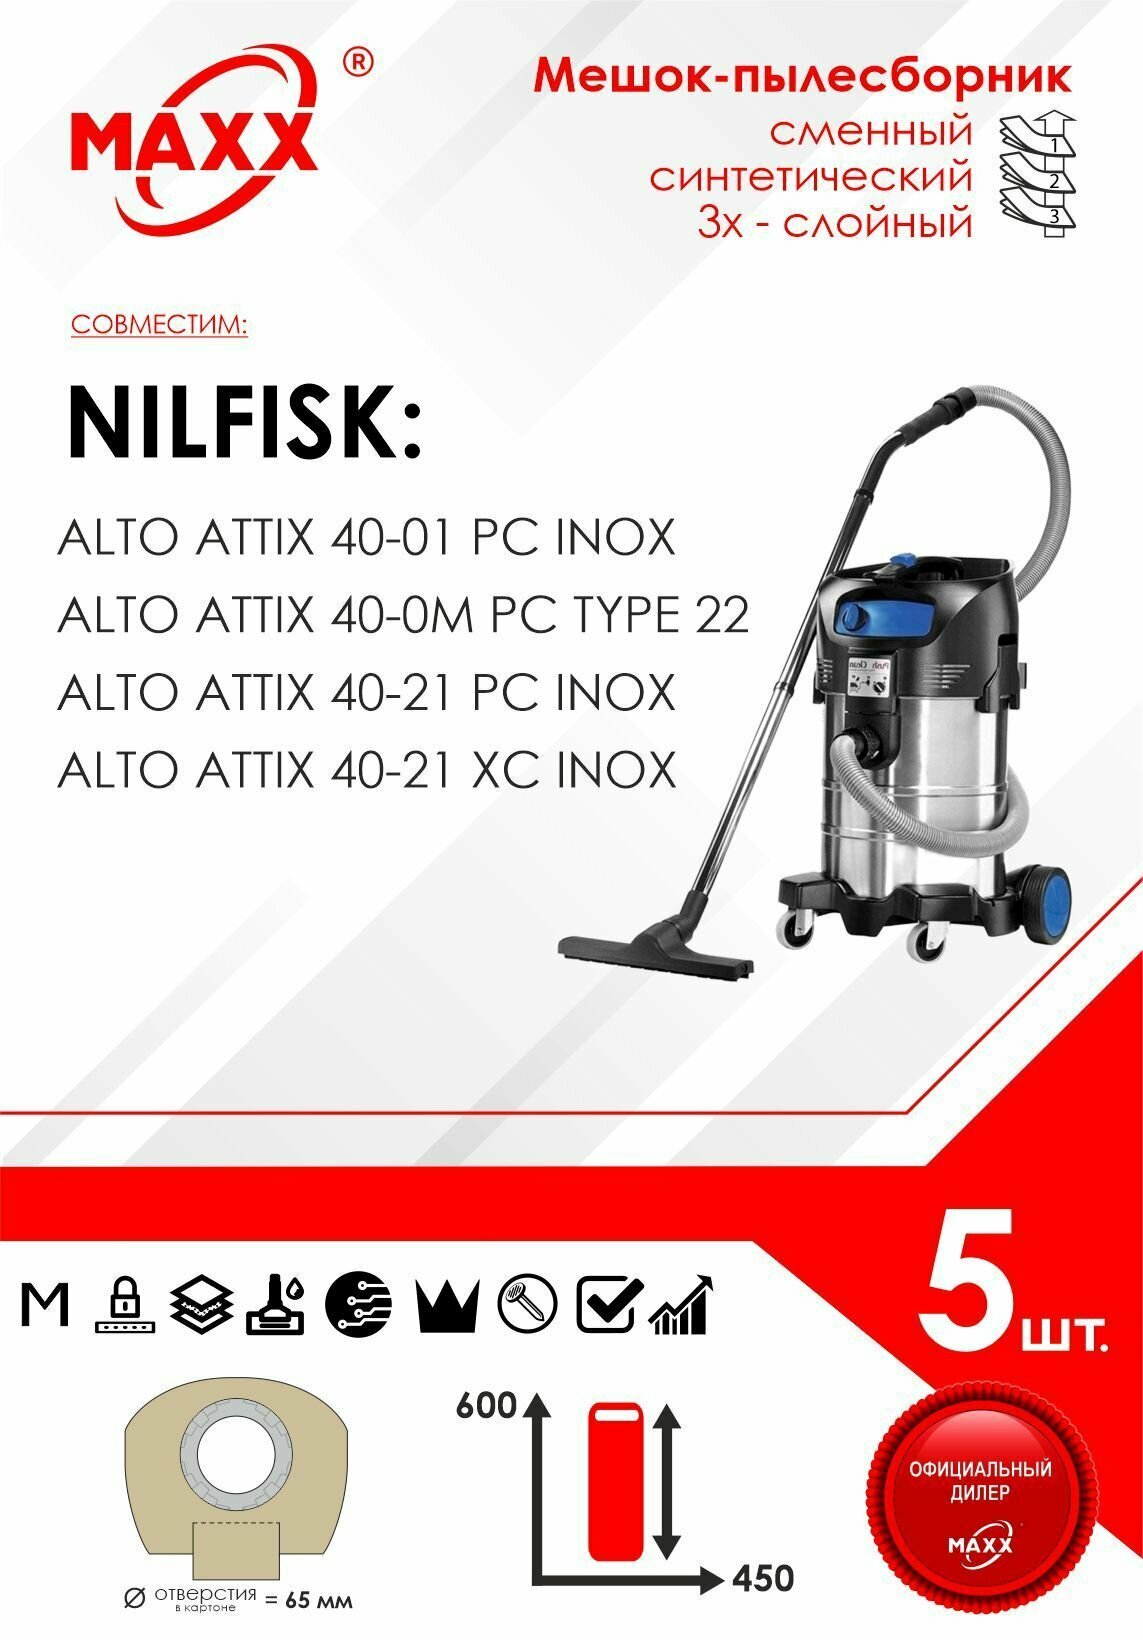 Мешок - пылесборник 5 шт. для пылесоса Nilfisk ATTIX 40-0M, 40-01, 40-21 (Нилфиск), 302002404